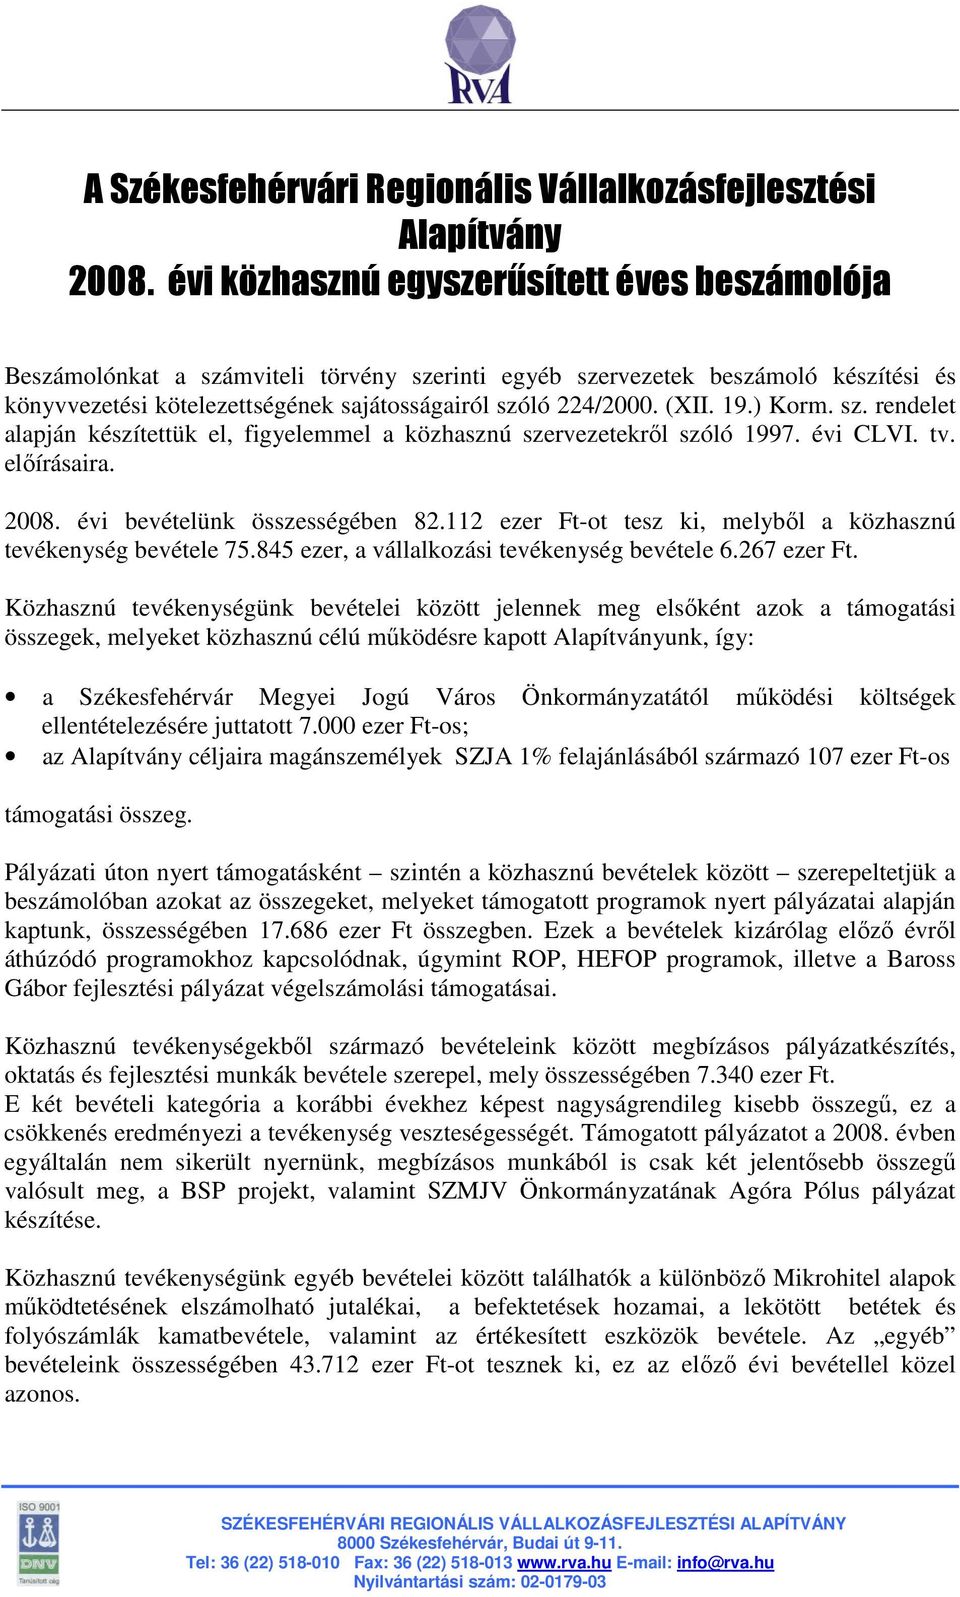 19.) Korm. sz. rendelet alapján készítettük el, figyelemmel a közhasznú szervezetekrıl szóló 1997. évi CLVI. tv. elıírásaira. 2008. évi bevételünk összességében 82.